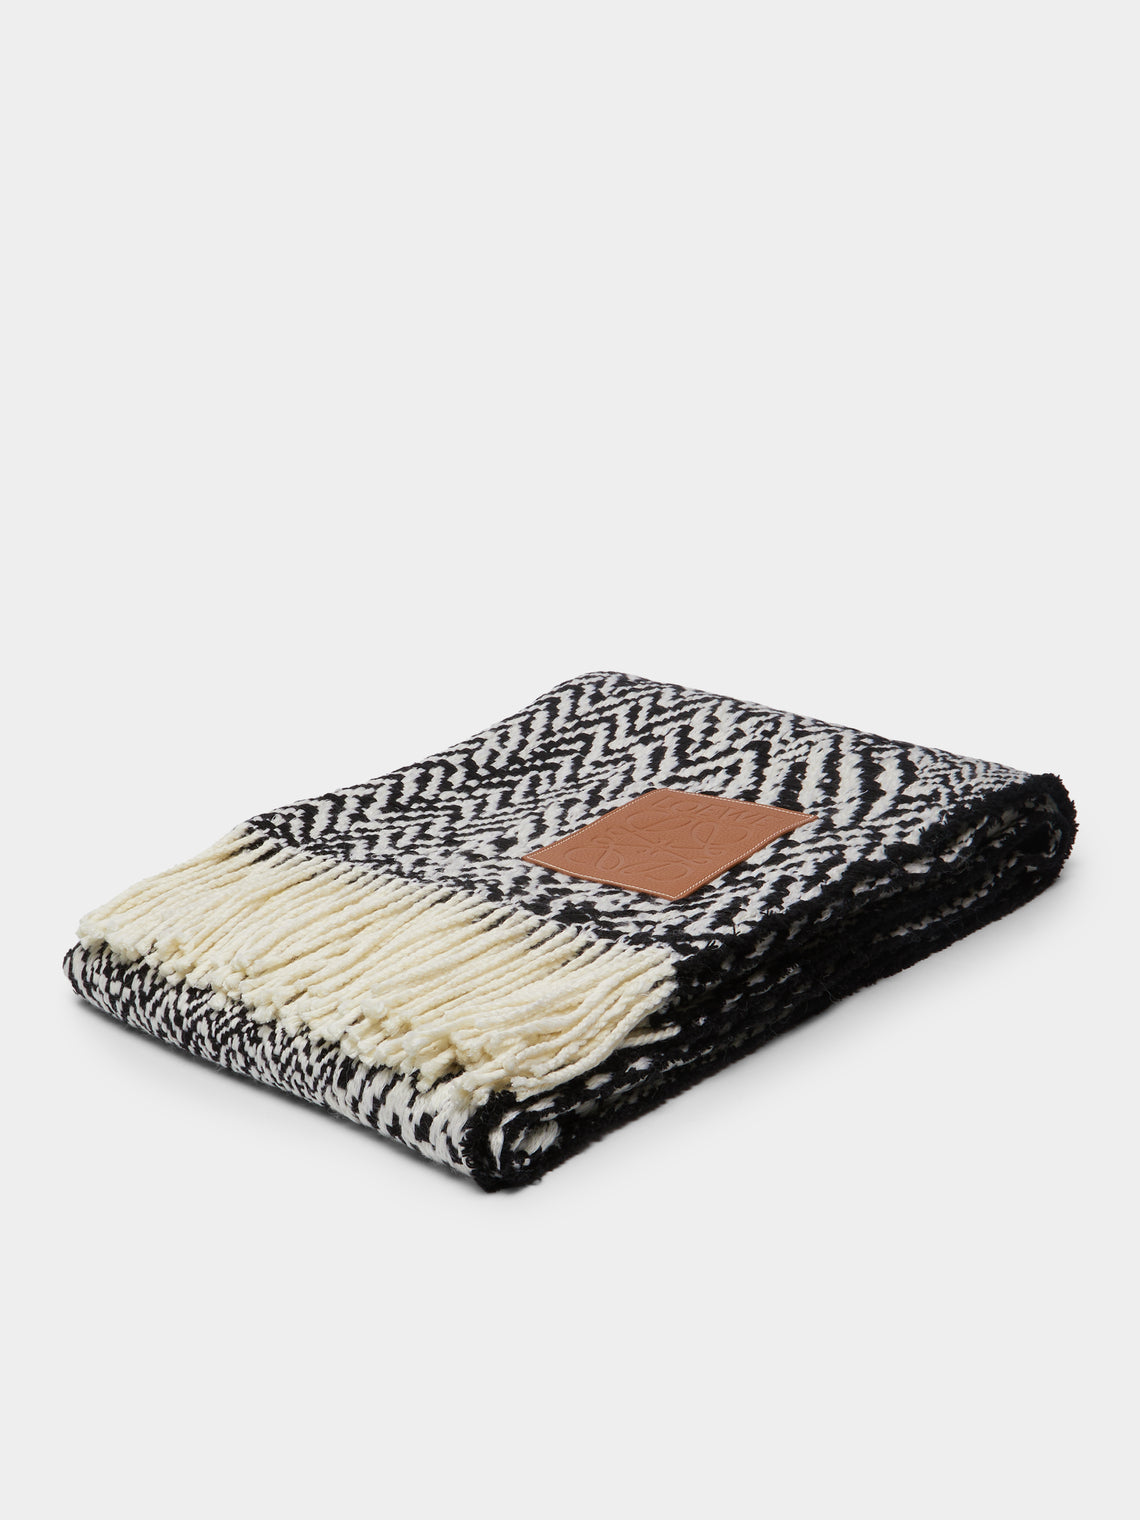 Loewe Home - Herringbone Wool Blanket -  - ABASK